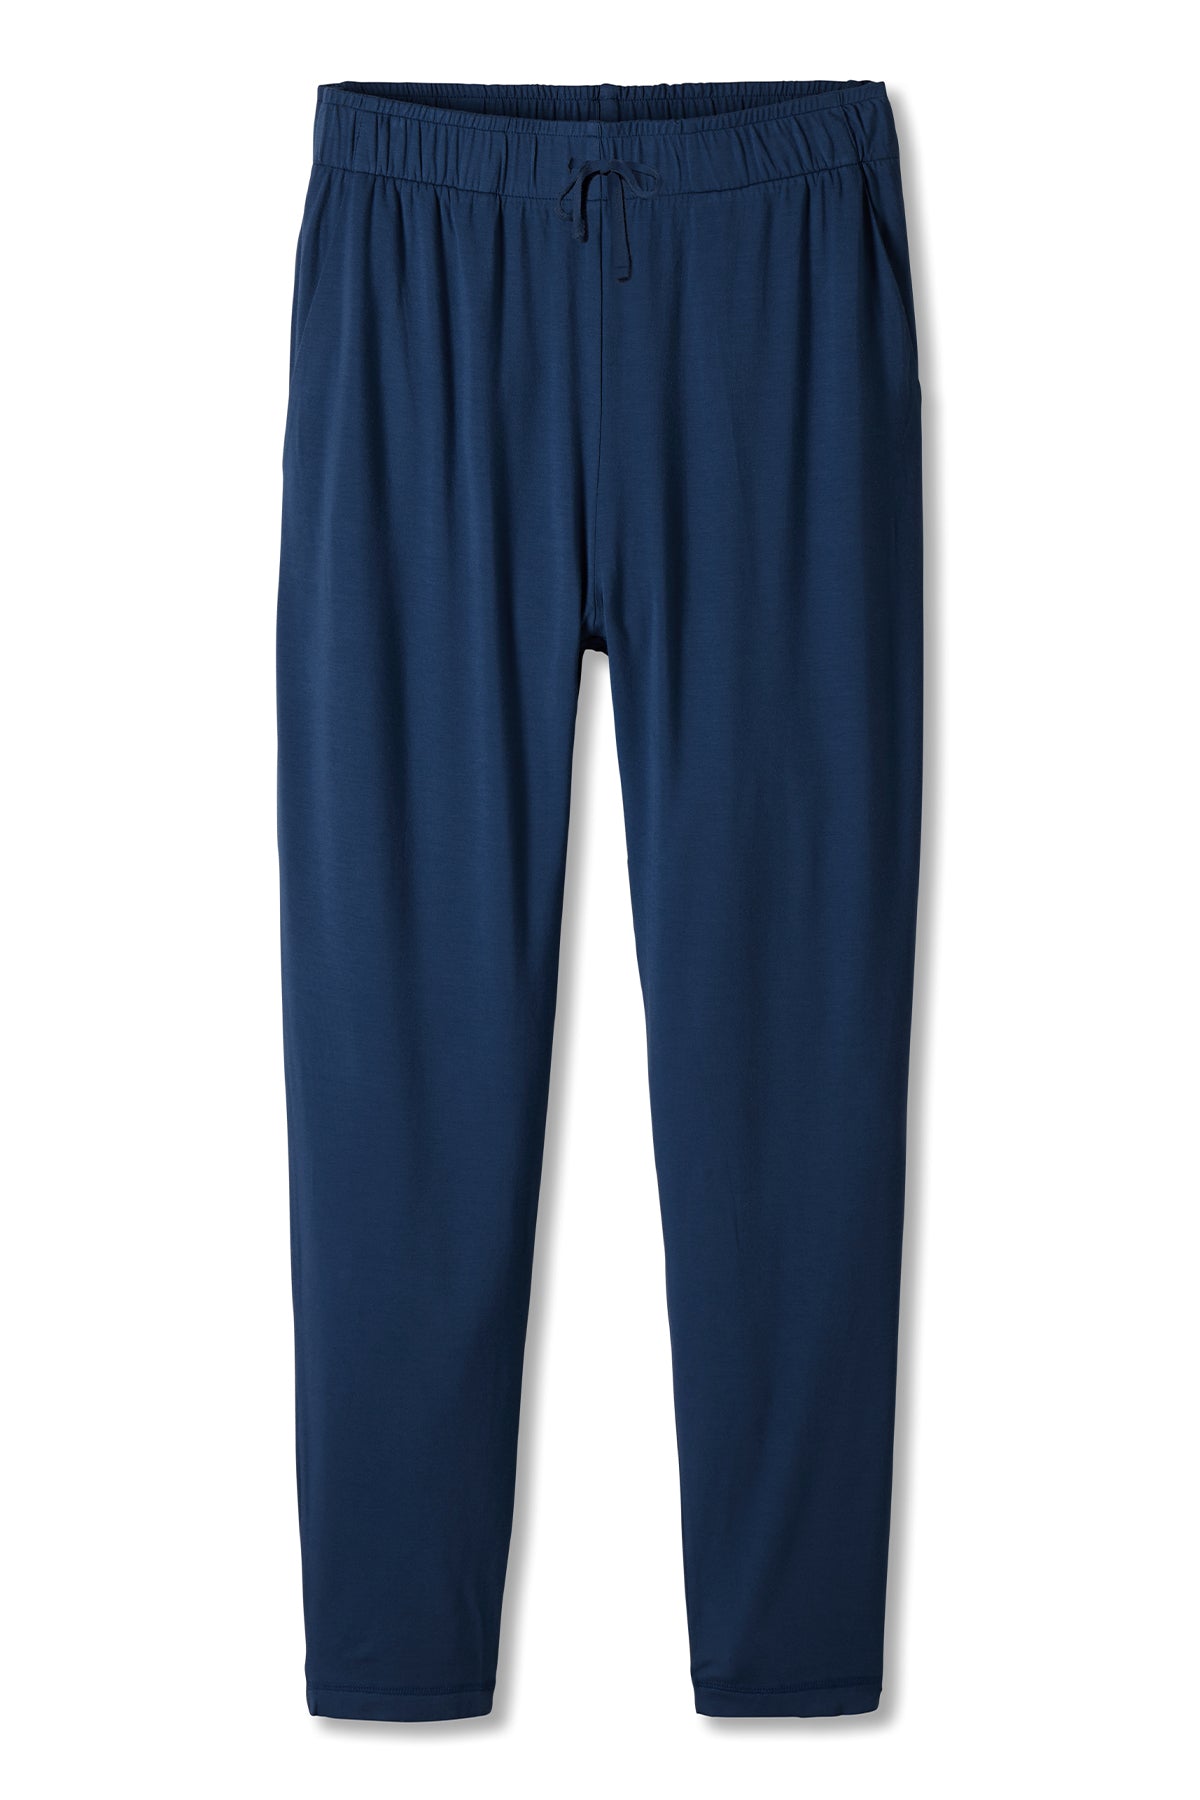 Monochrome organic cotton lounge pant | Le 31 | Shop Men's Pyjamas &  Leisurewear Online | Simons